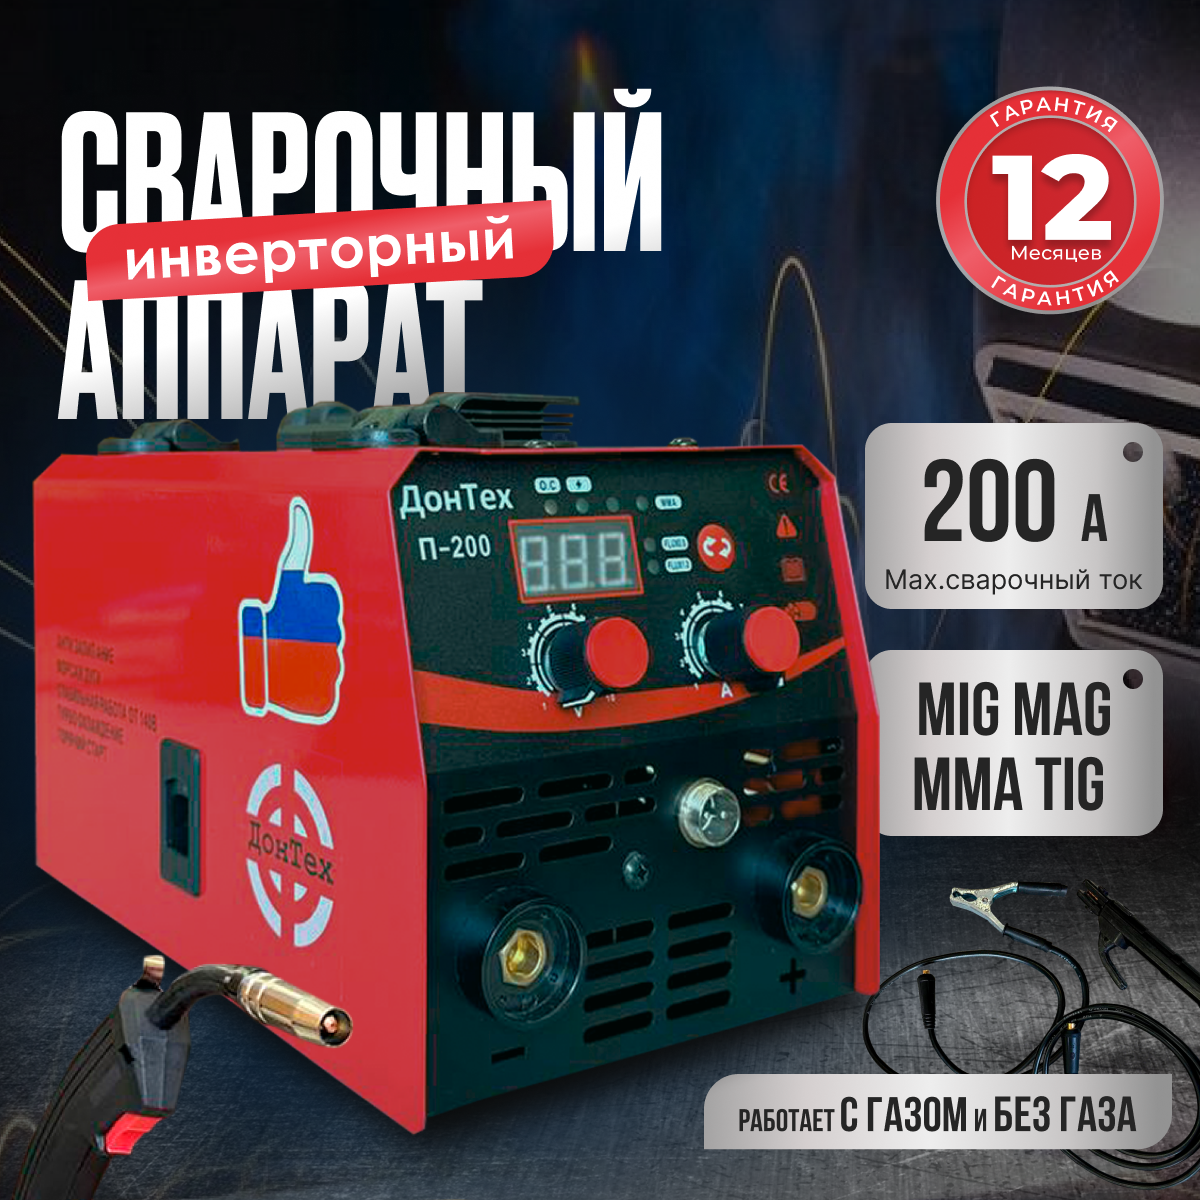 Сварочный инверторный аппарат ДонТех П-200 сварочный автомат горячего воздуха weldy